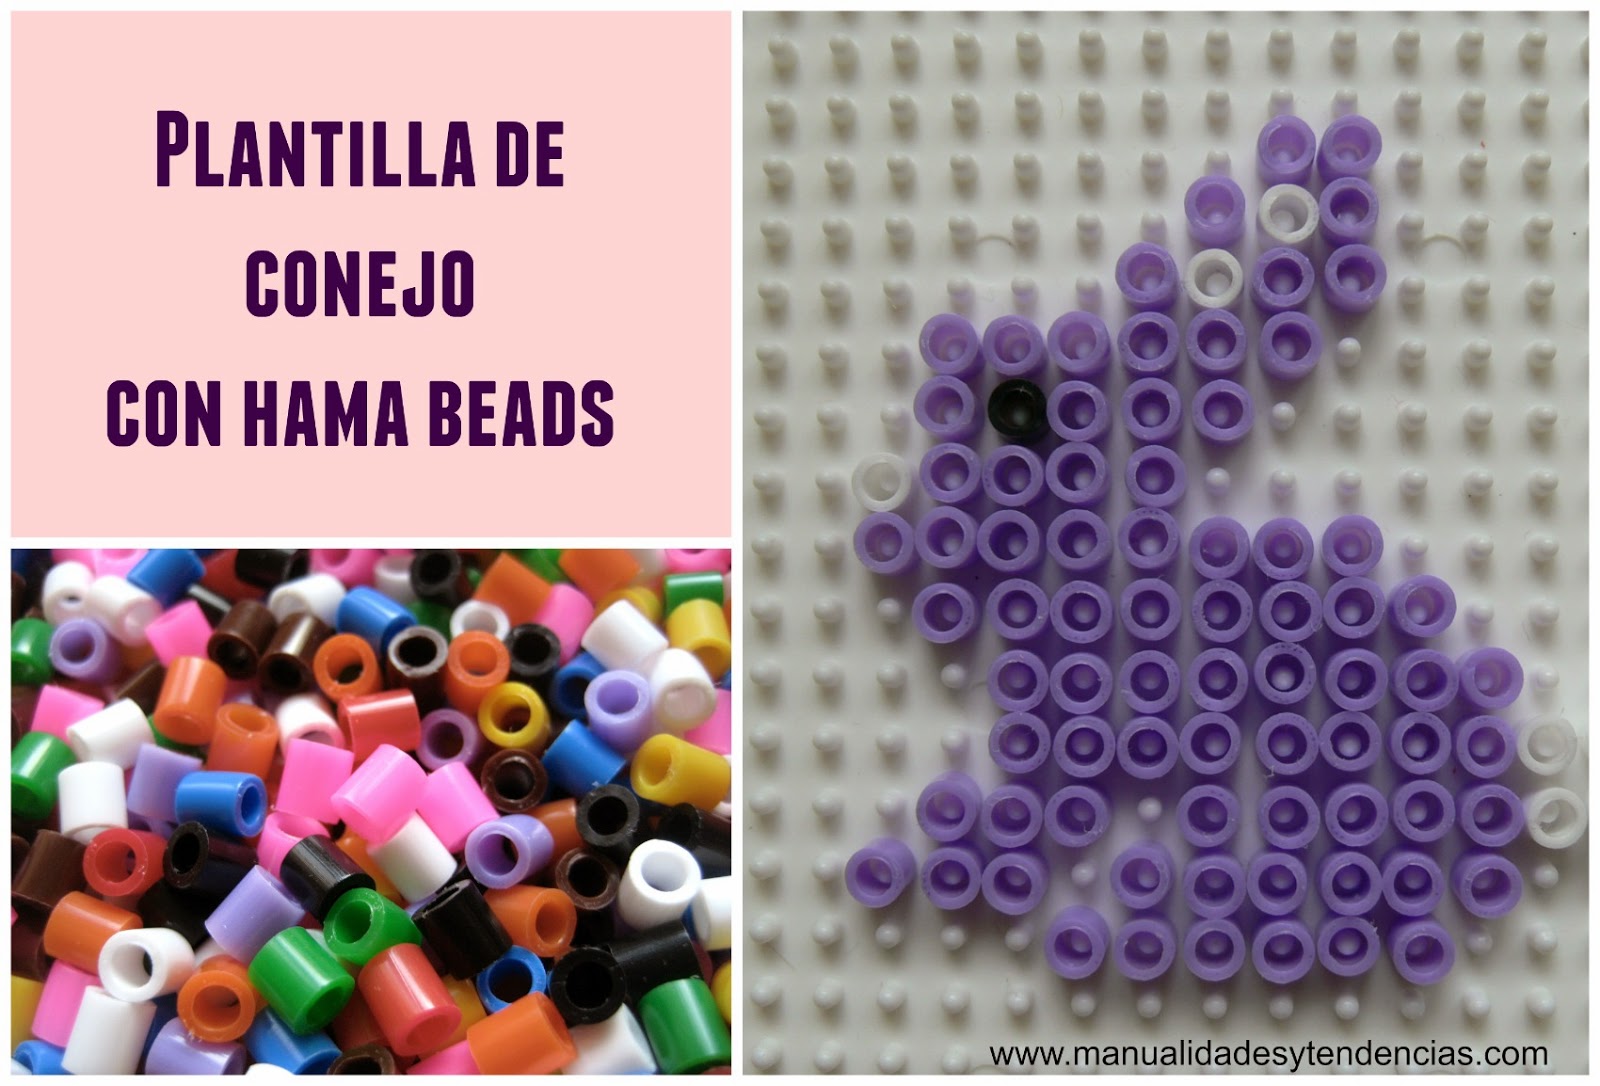 Plantilla conejo hama beads